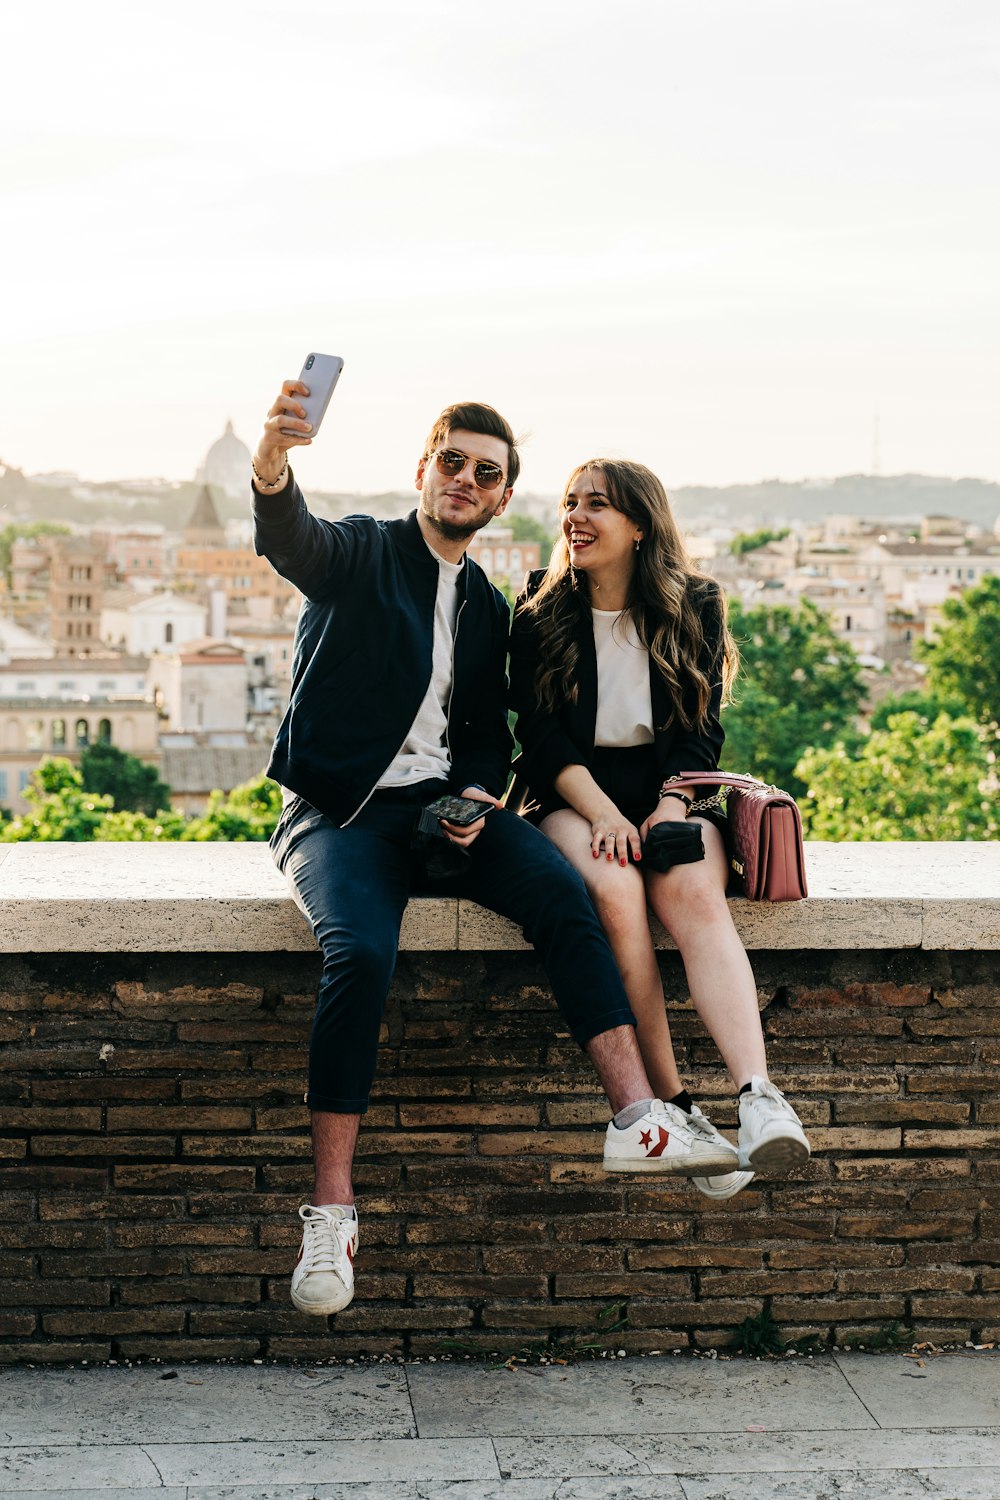 Un hombre y una mujer tomándose una selfie